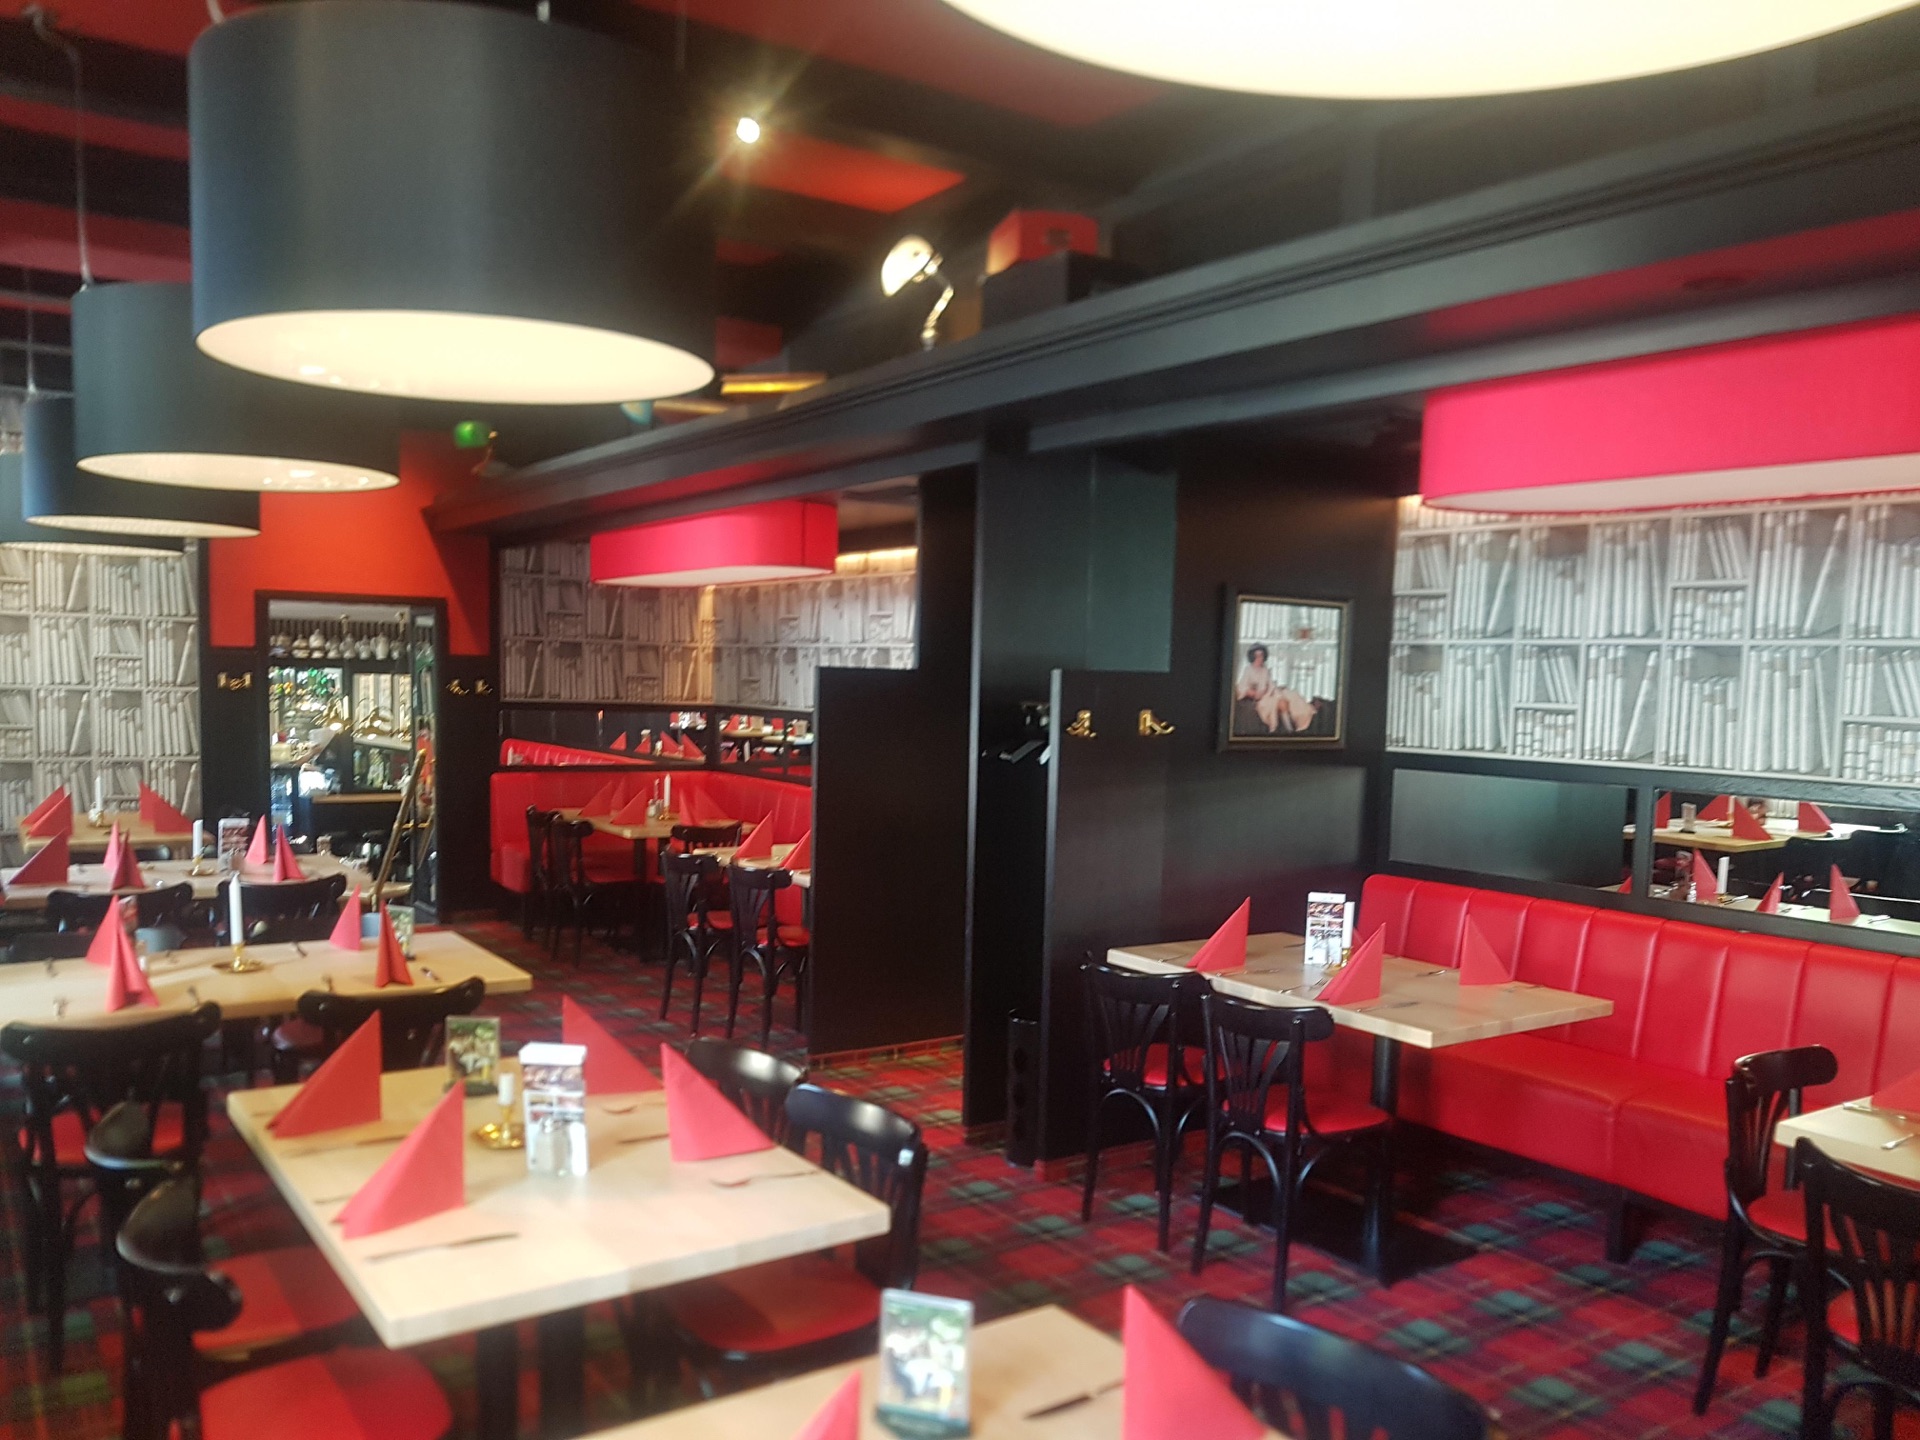 Bild eines Restaurants mit den Hauptfarben Rot und Schwarz. Auffällig sind große Deckenlampen. Auf den Tischen sind rote Servietten. An den Tischen stehen schwarze Stühle und rote Couchs.